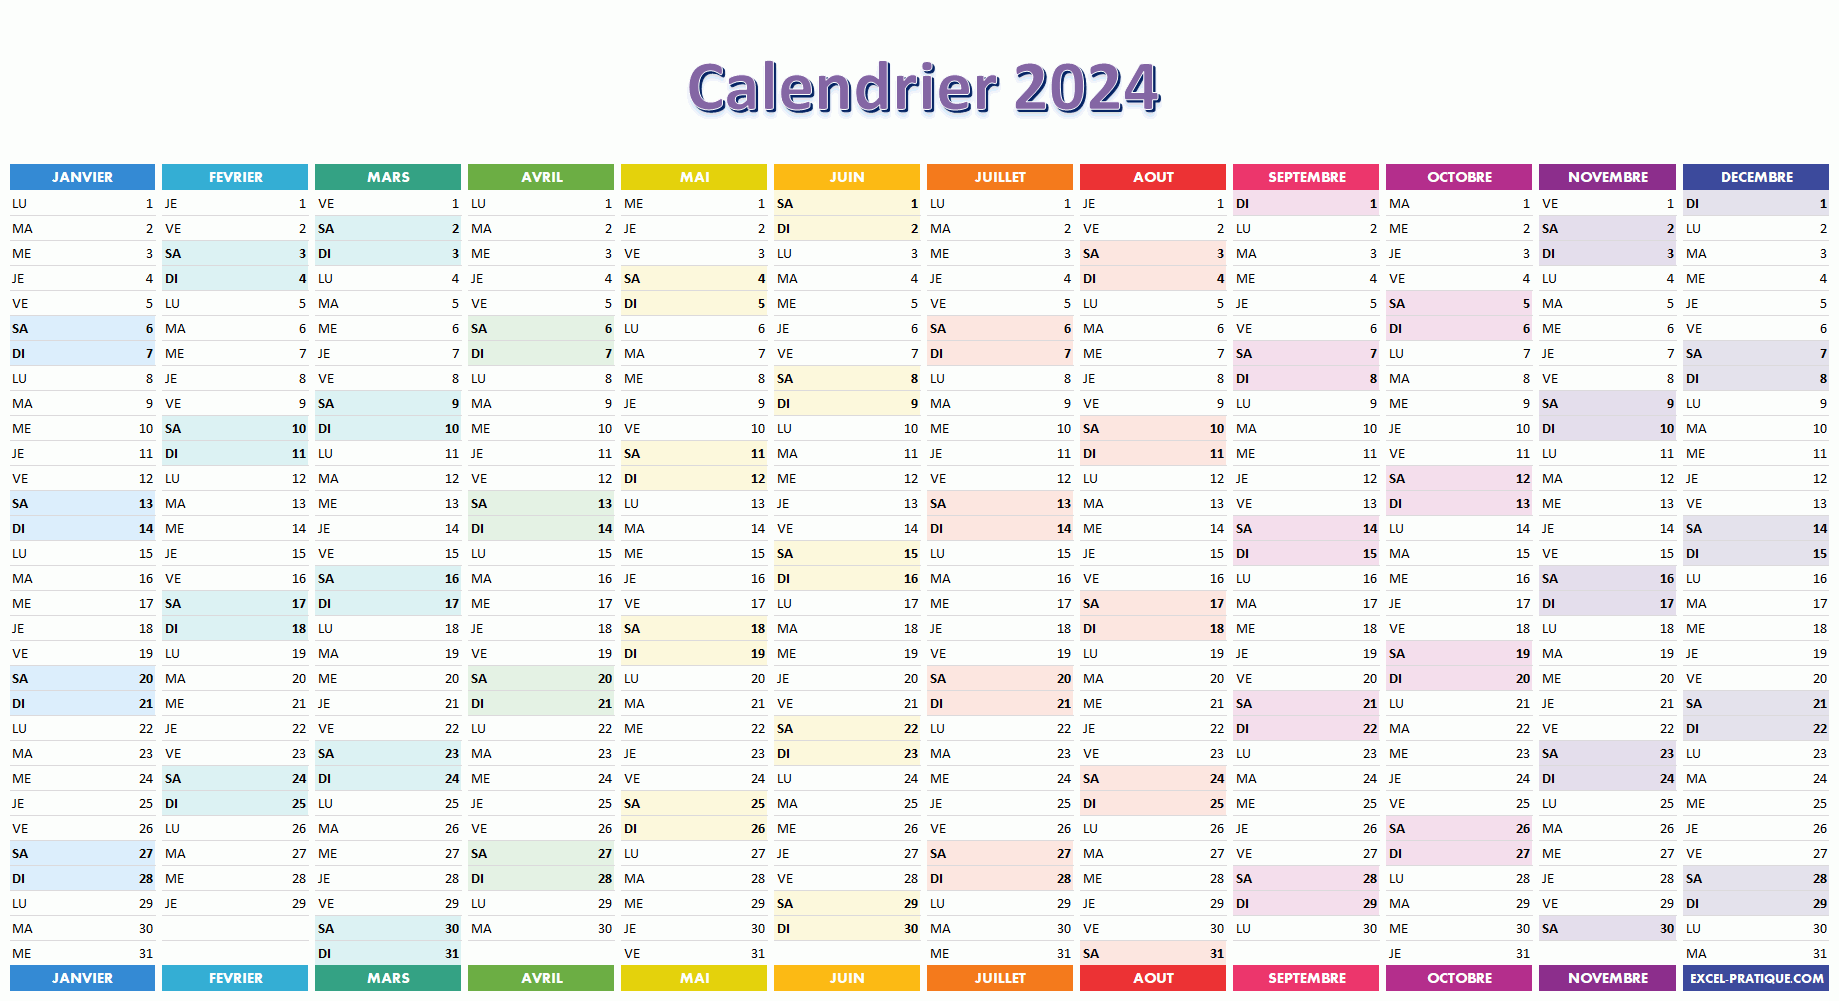 Calendrier Excel gratuit mensuel pour l'année 2024 – Espritacademique